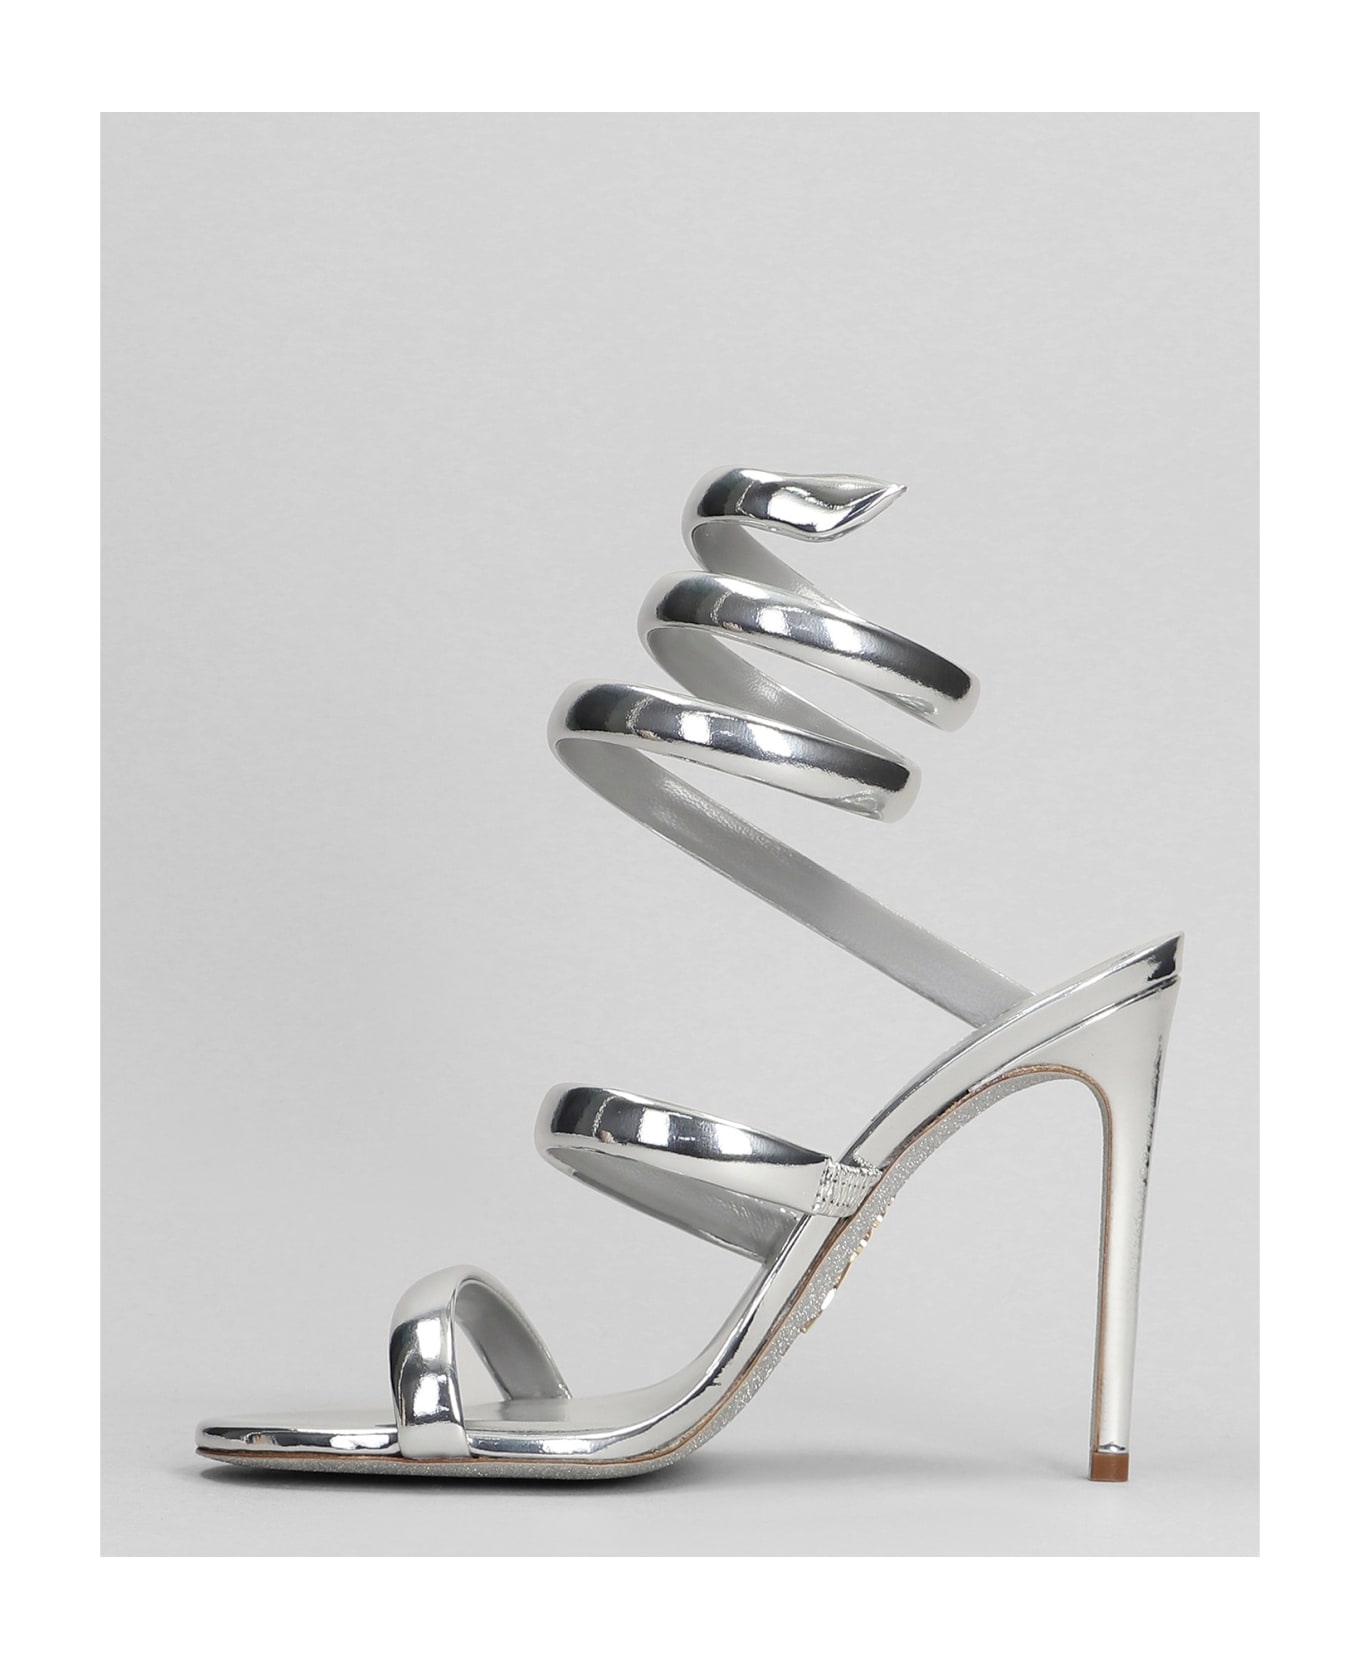 René Caovilla Serpente Sandals In Silver Leather - silver